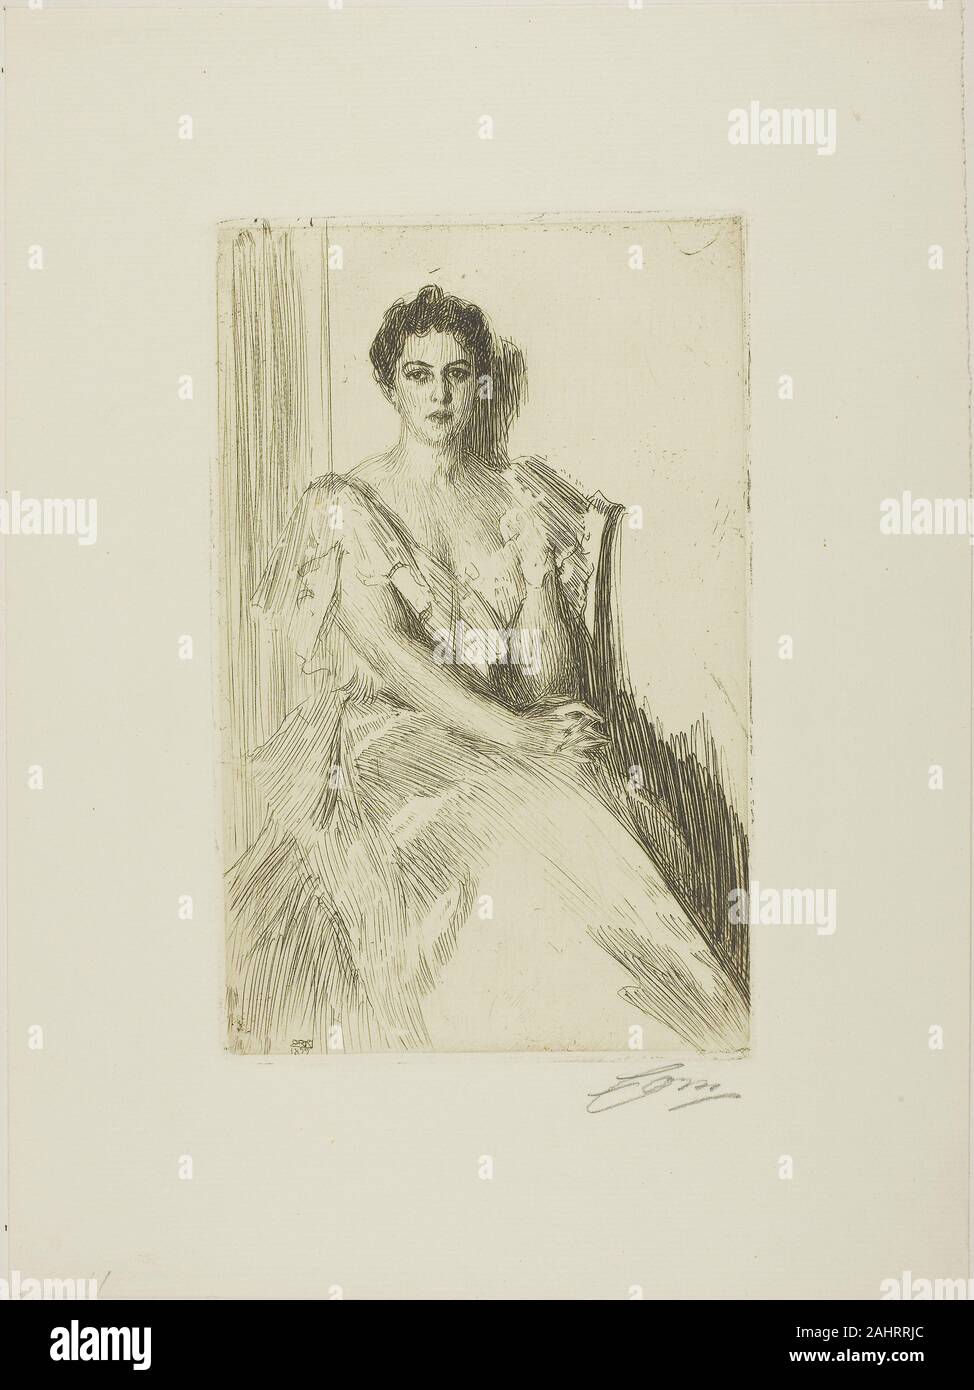 Anders Zorn. Mme Cleveland II. 1899. La Suède. Gravure sur papier vergé ivoire Banque D'Images